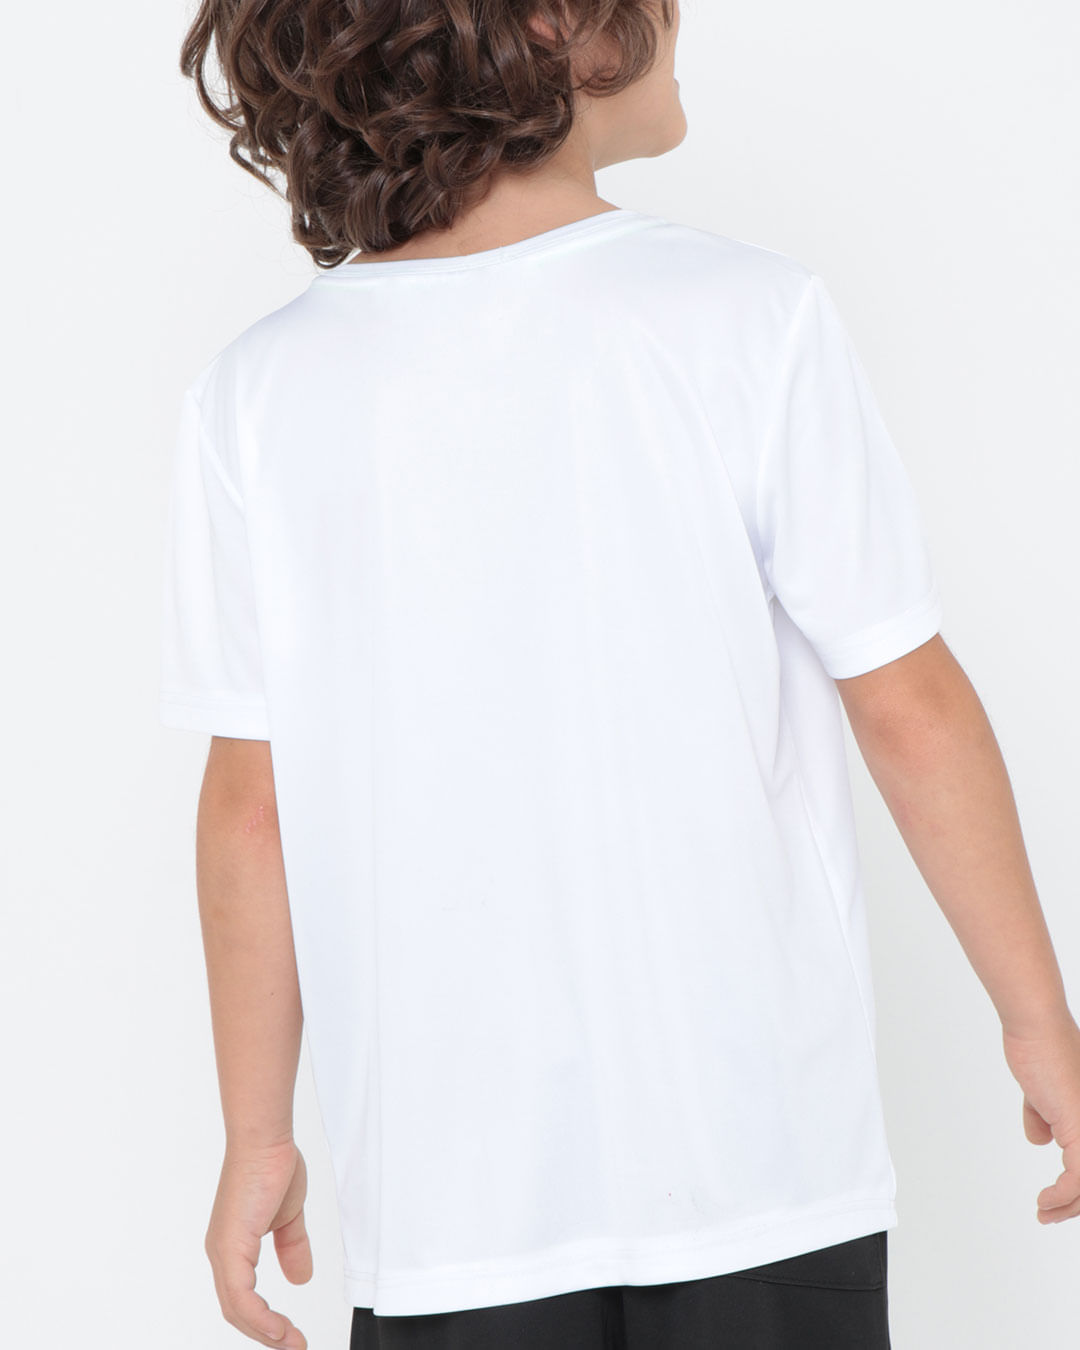 Camiseta-10010-M-Dry-Fit-48---Branco